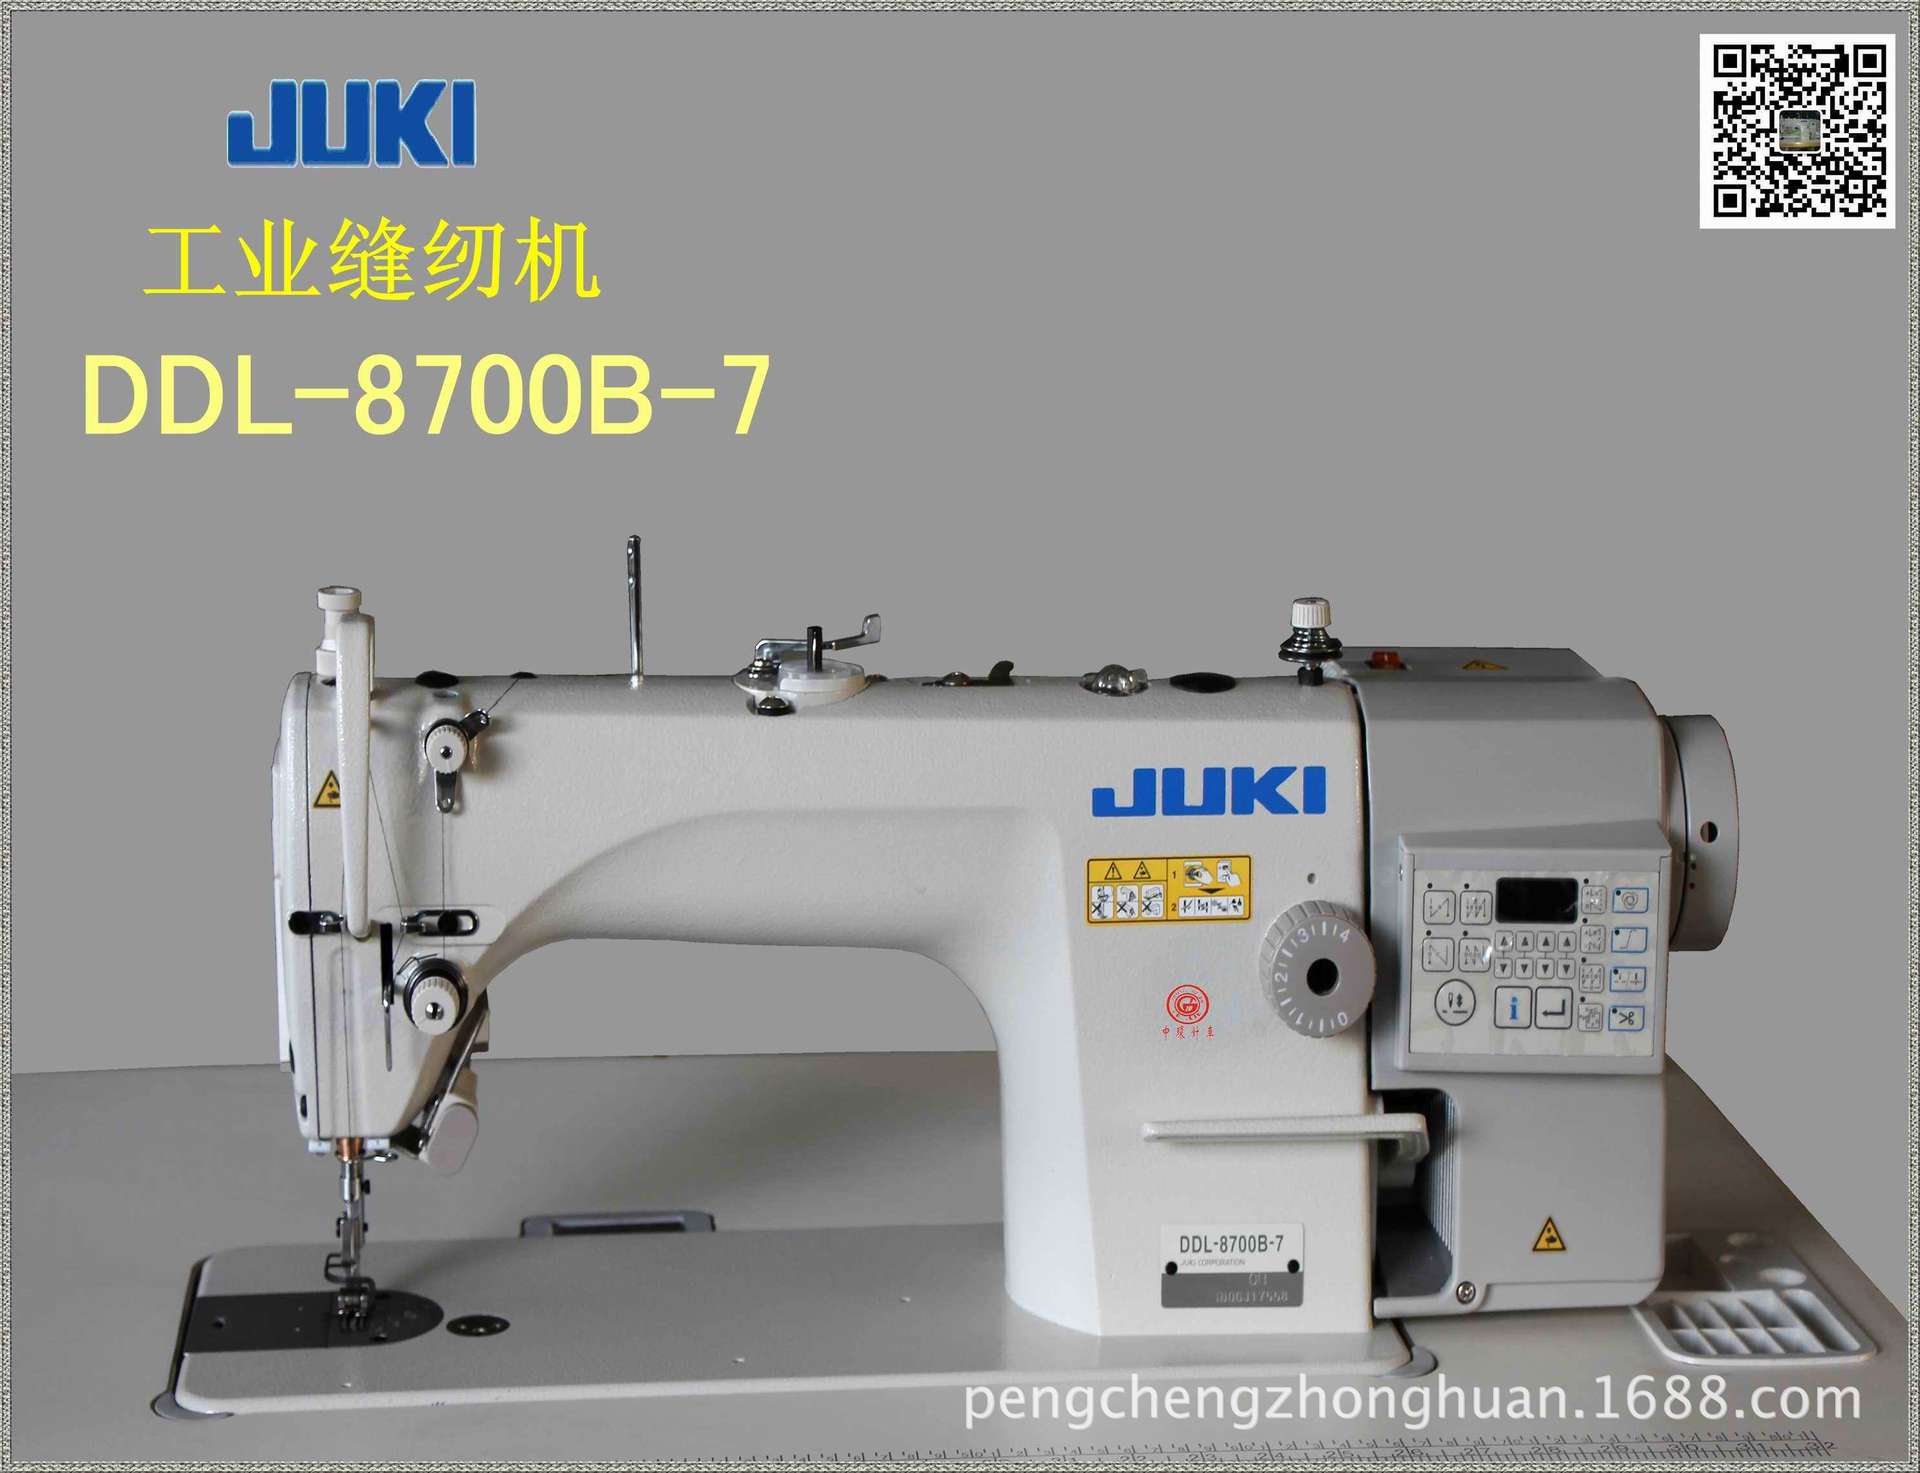 日本重机juki单针自动切线工业缝纫机ddl-8700b-7